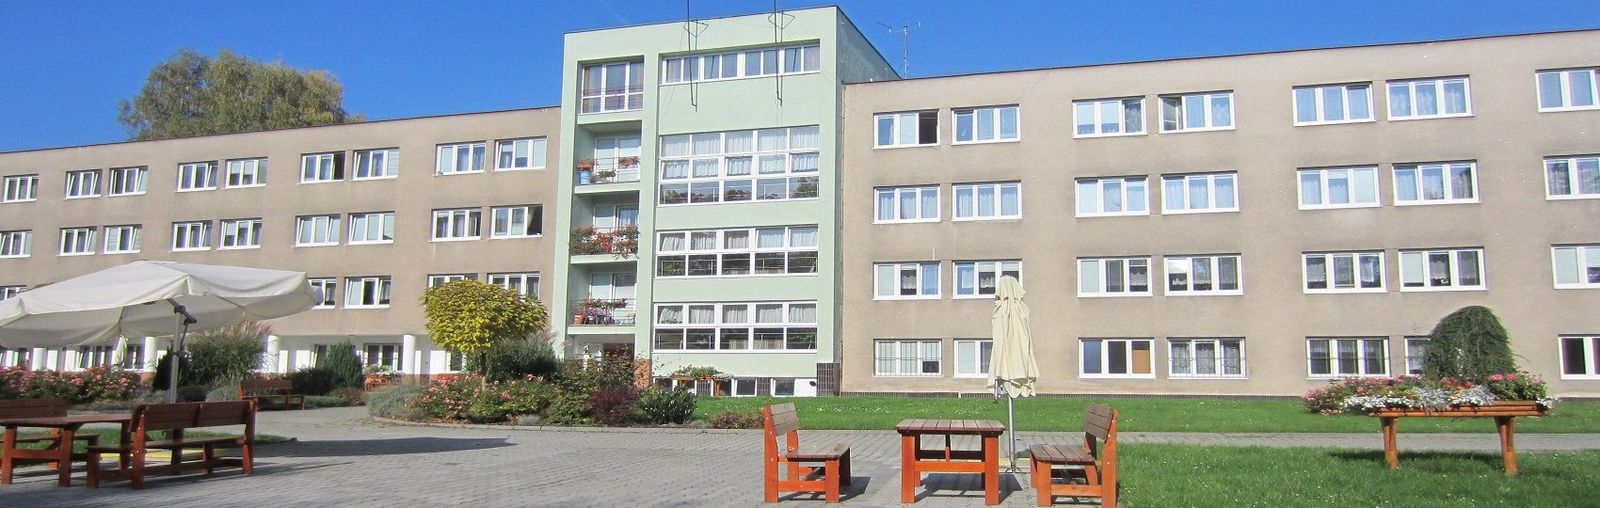 Městský ústav sociálních služeb města Plzně